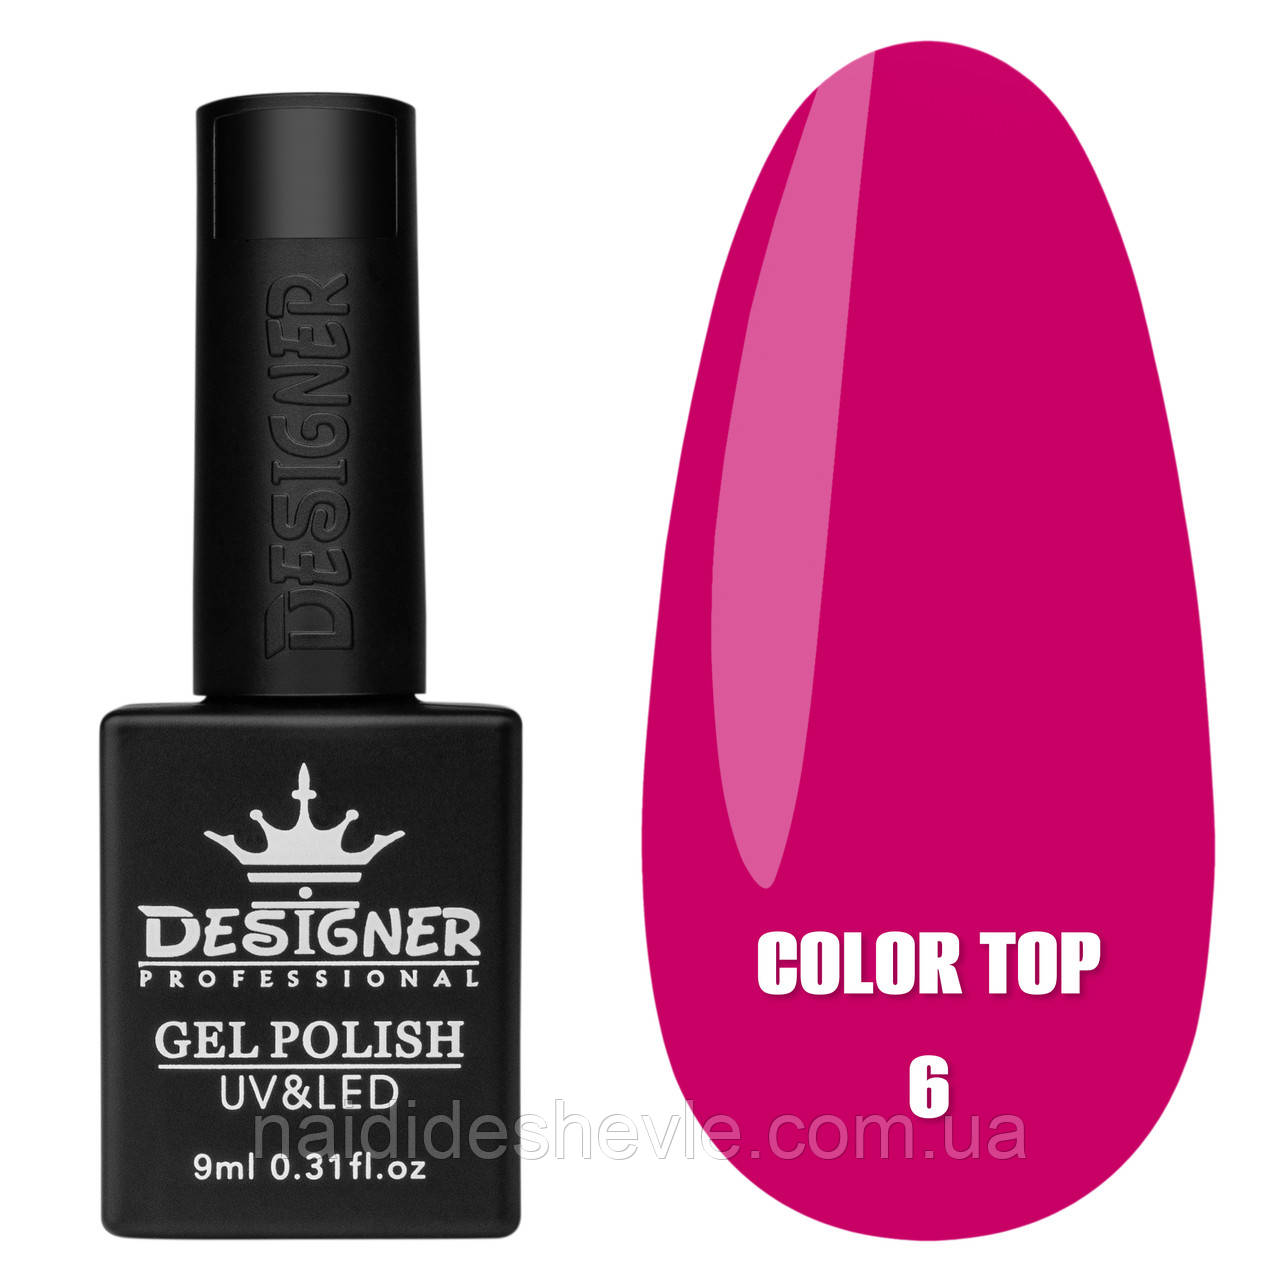 Color Top Дизайнер (9 мл.) - кольорове топове покриття для нігтів з вітражним ефектом Малиновий 06